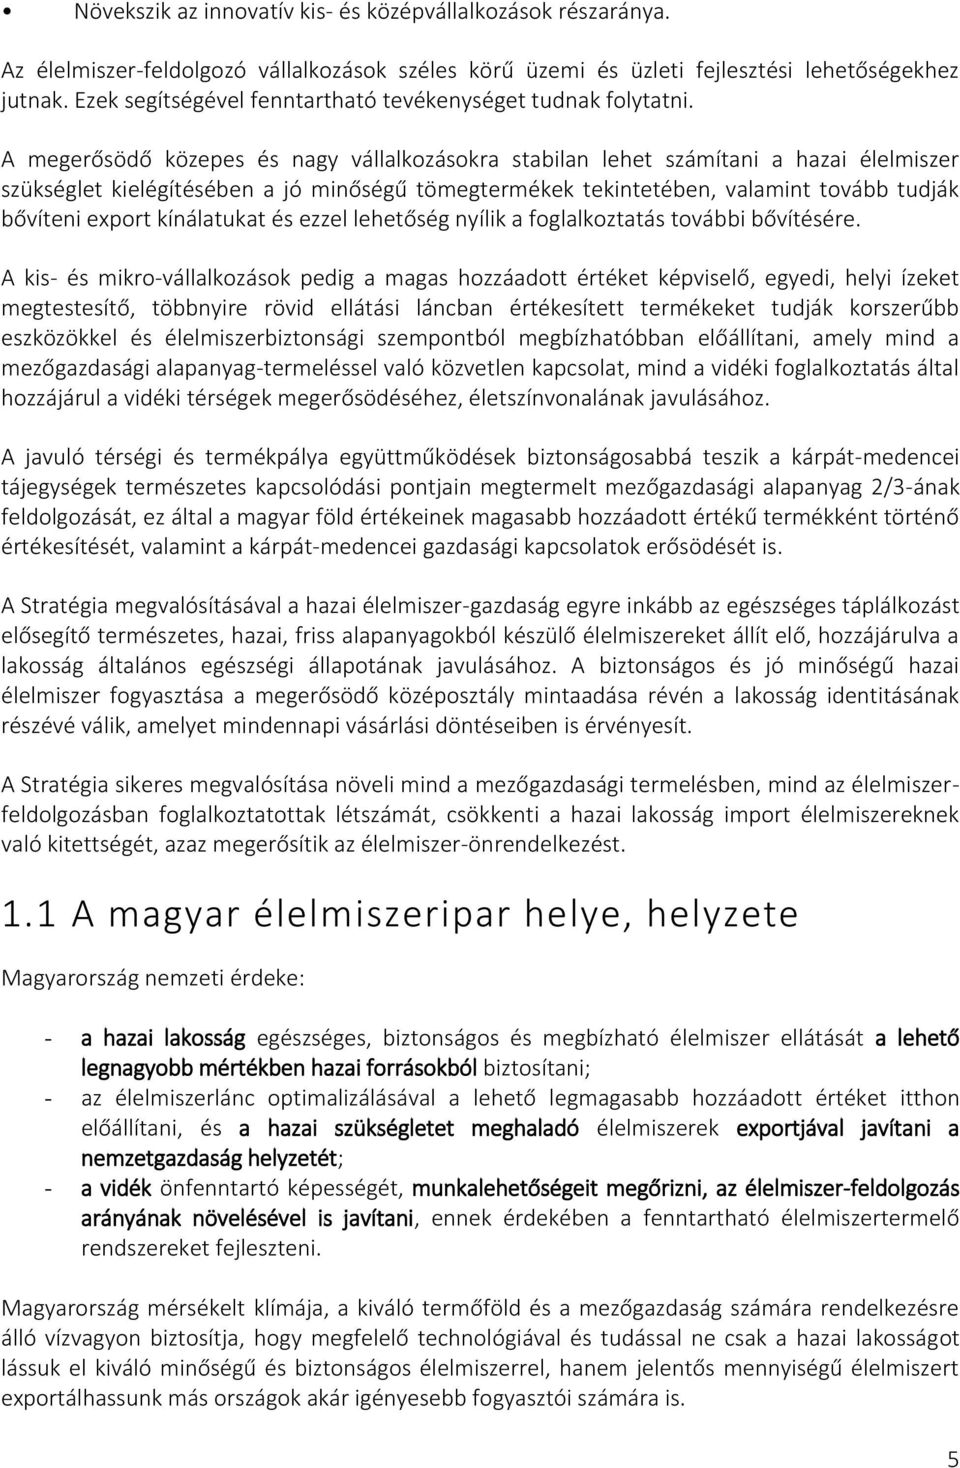 Magyarország közép- és hosszú távú élelmiszeripari fejlesztési stratégiája  - PDF Ingyenes letöltés